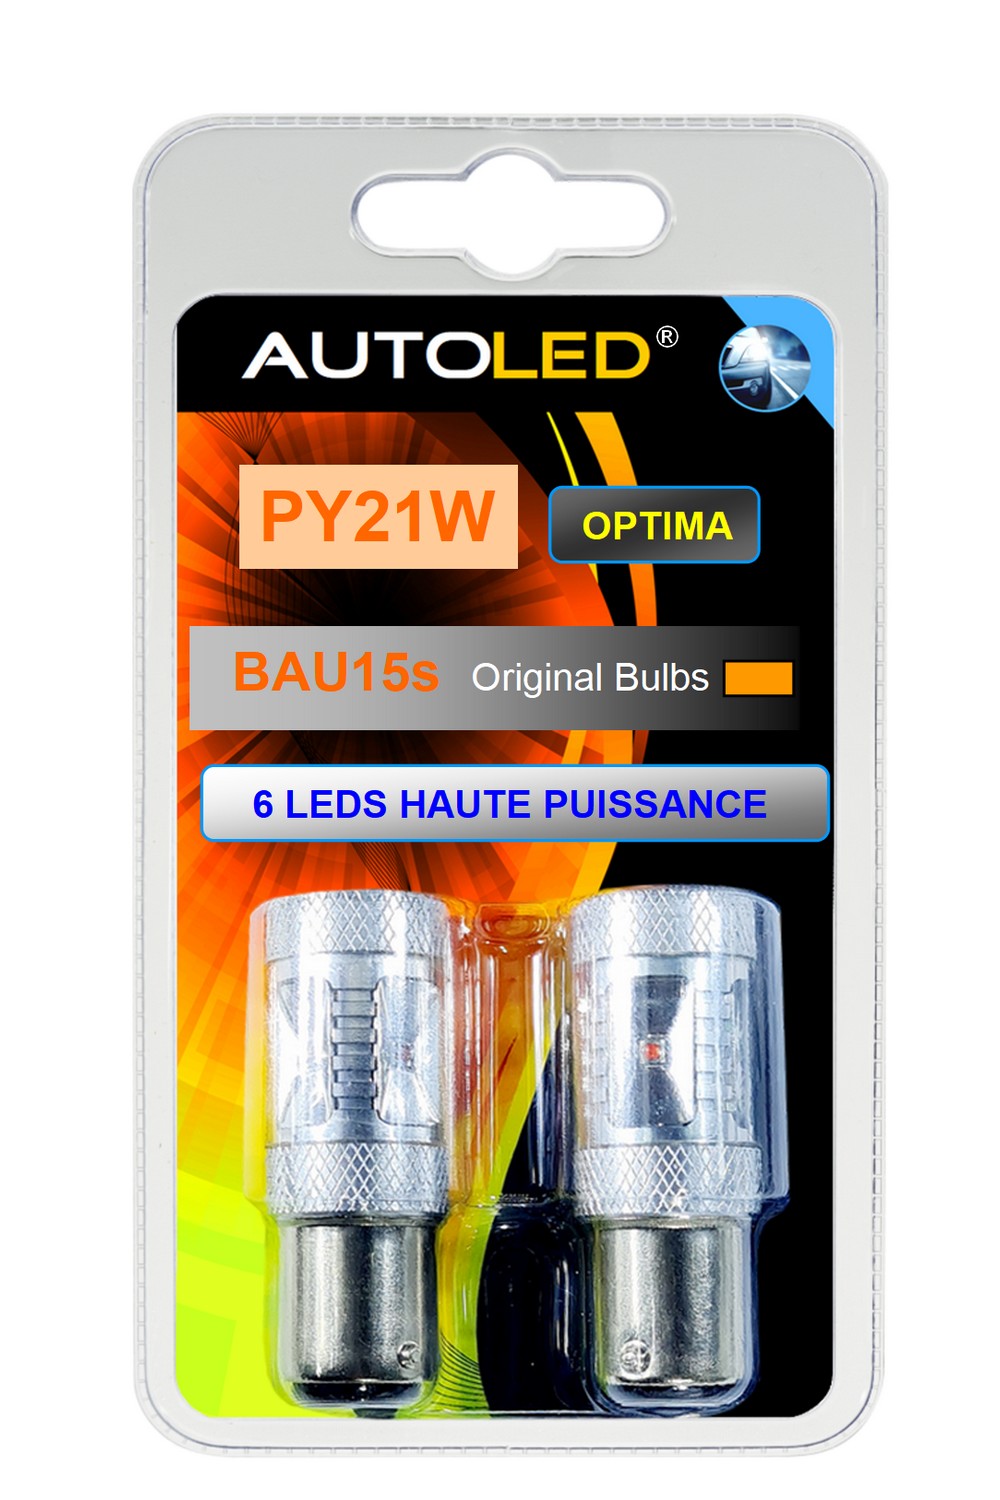 ampoule-leds-autoled-py21w-bau15s-6-leds-haute-puissance-orange-utilisation-feux-clignotants-ref-0228.2